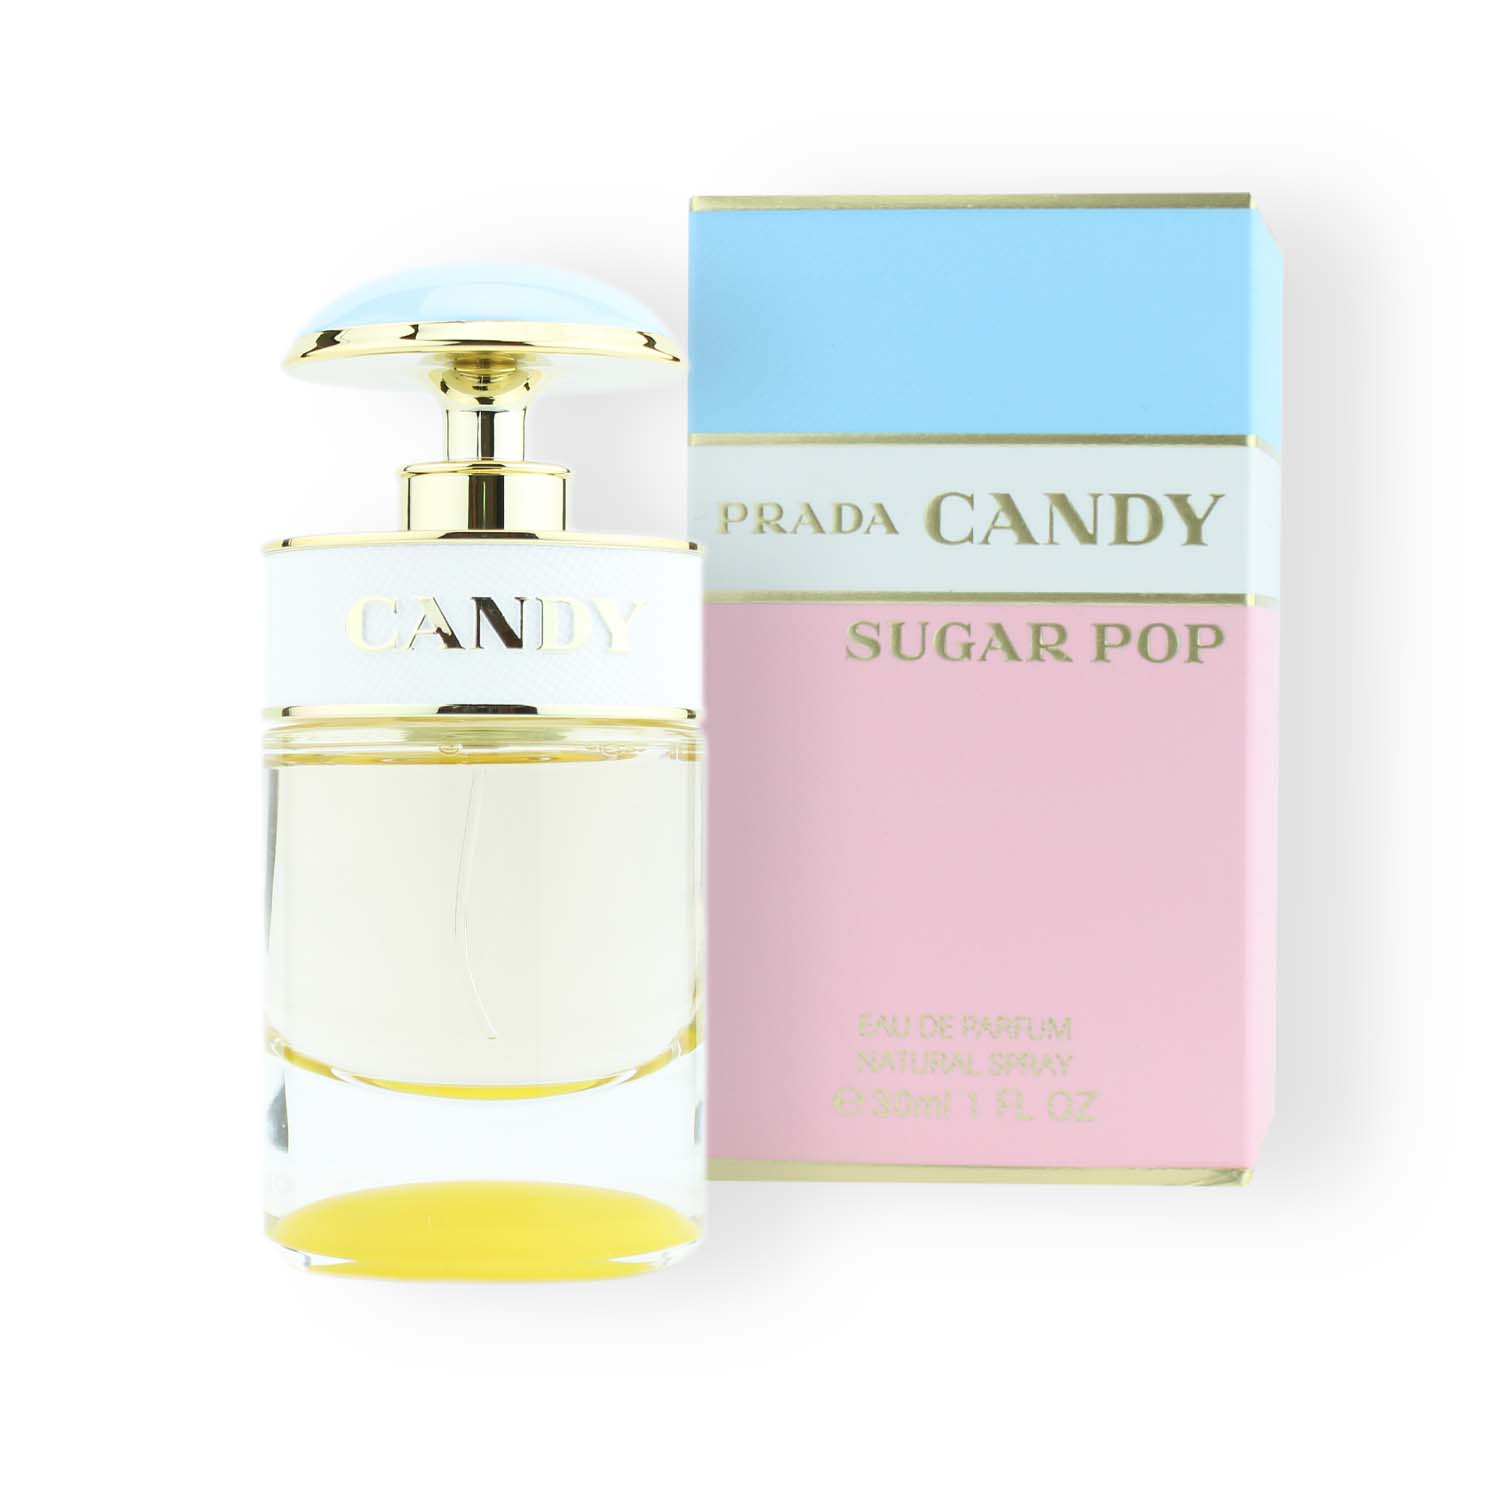 Prada Candy Sugar Pop Eau de Parfum 30ml